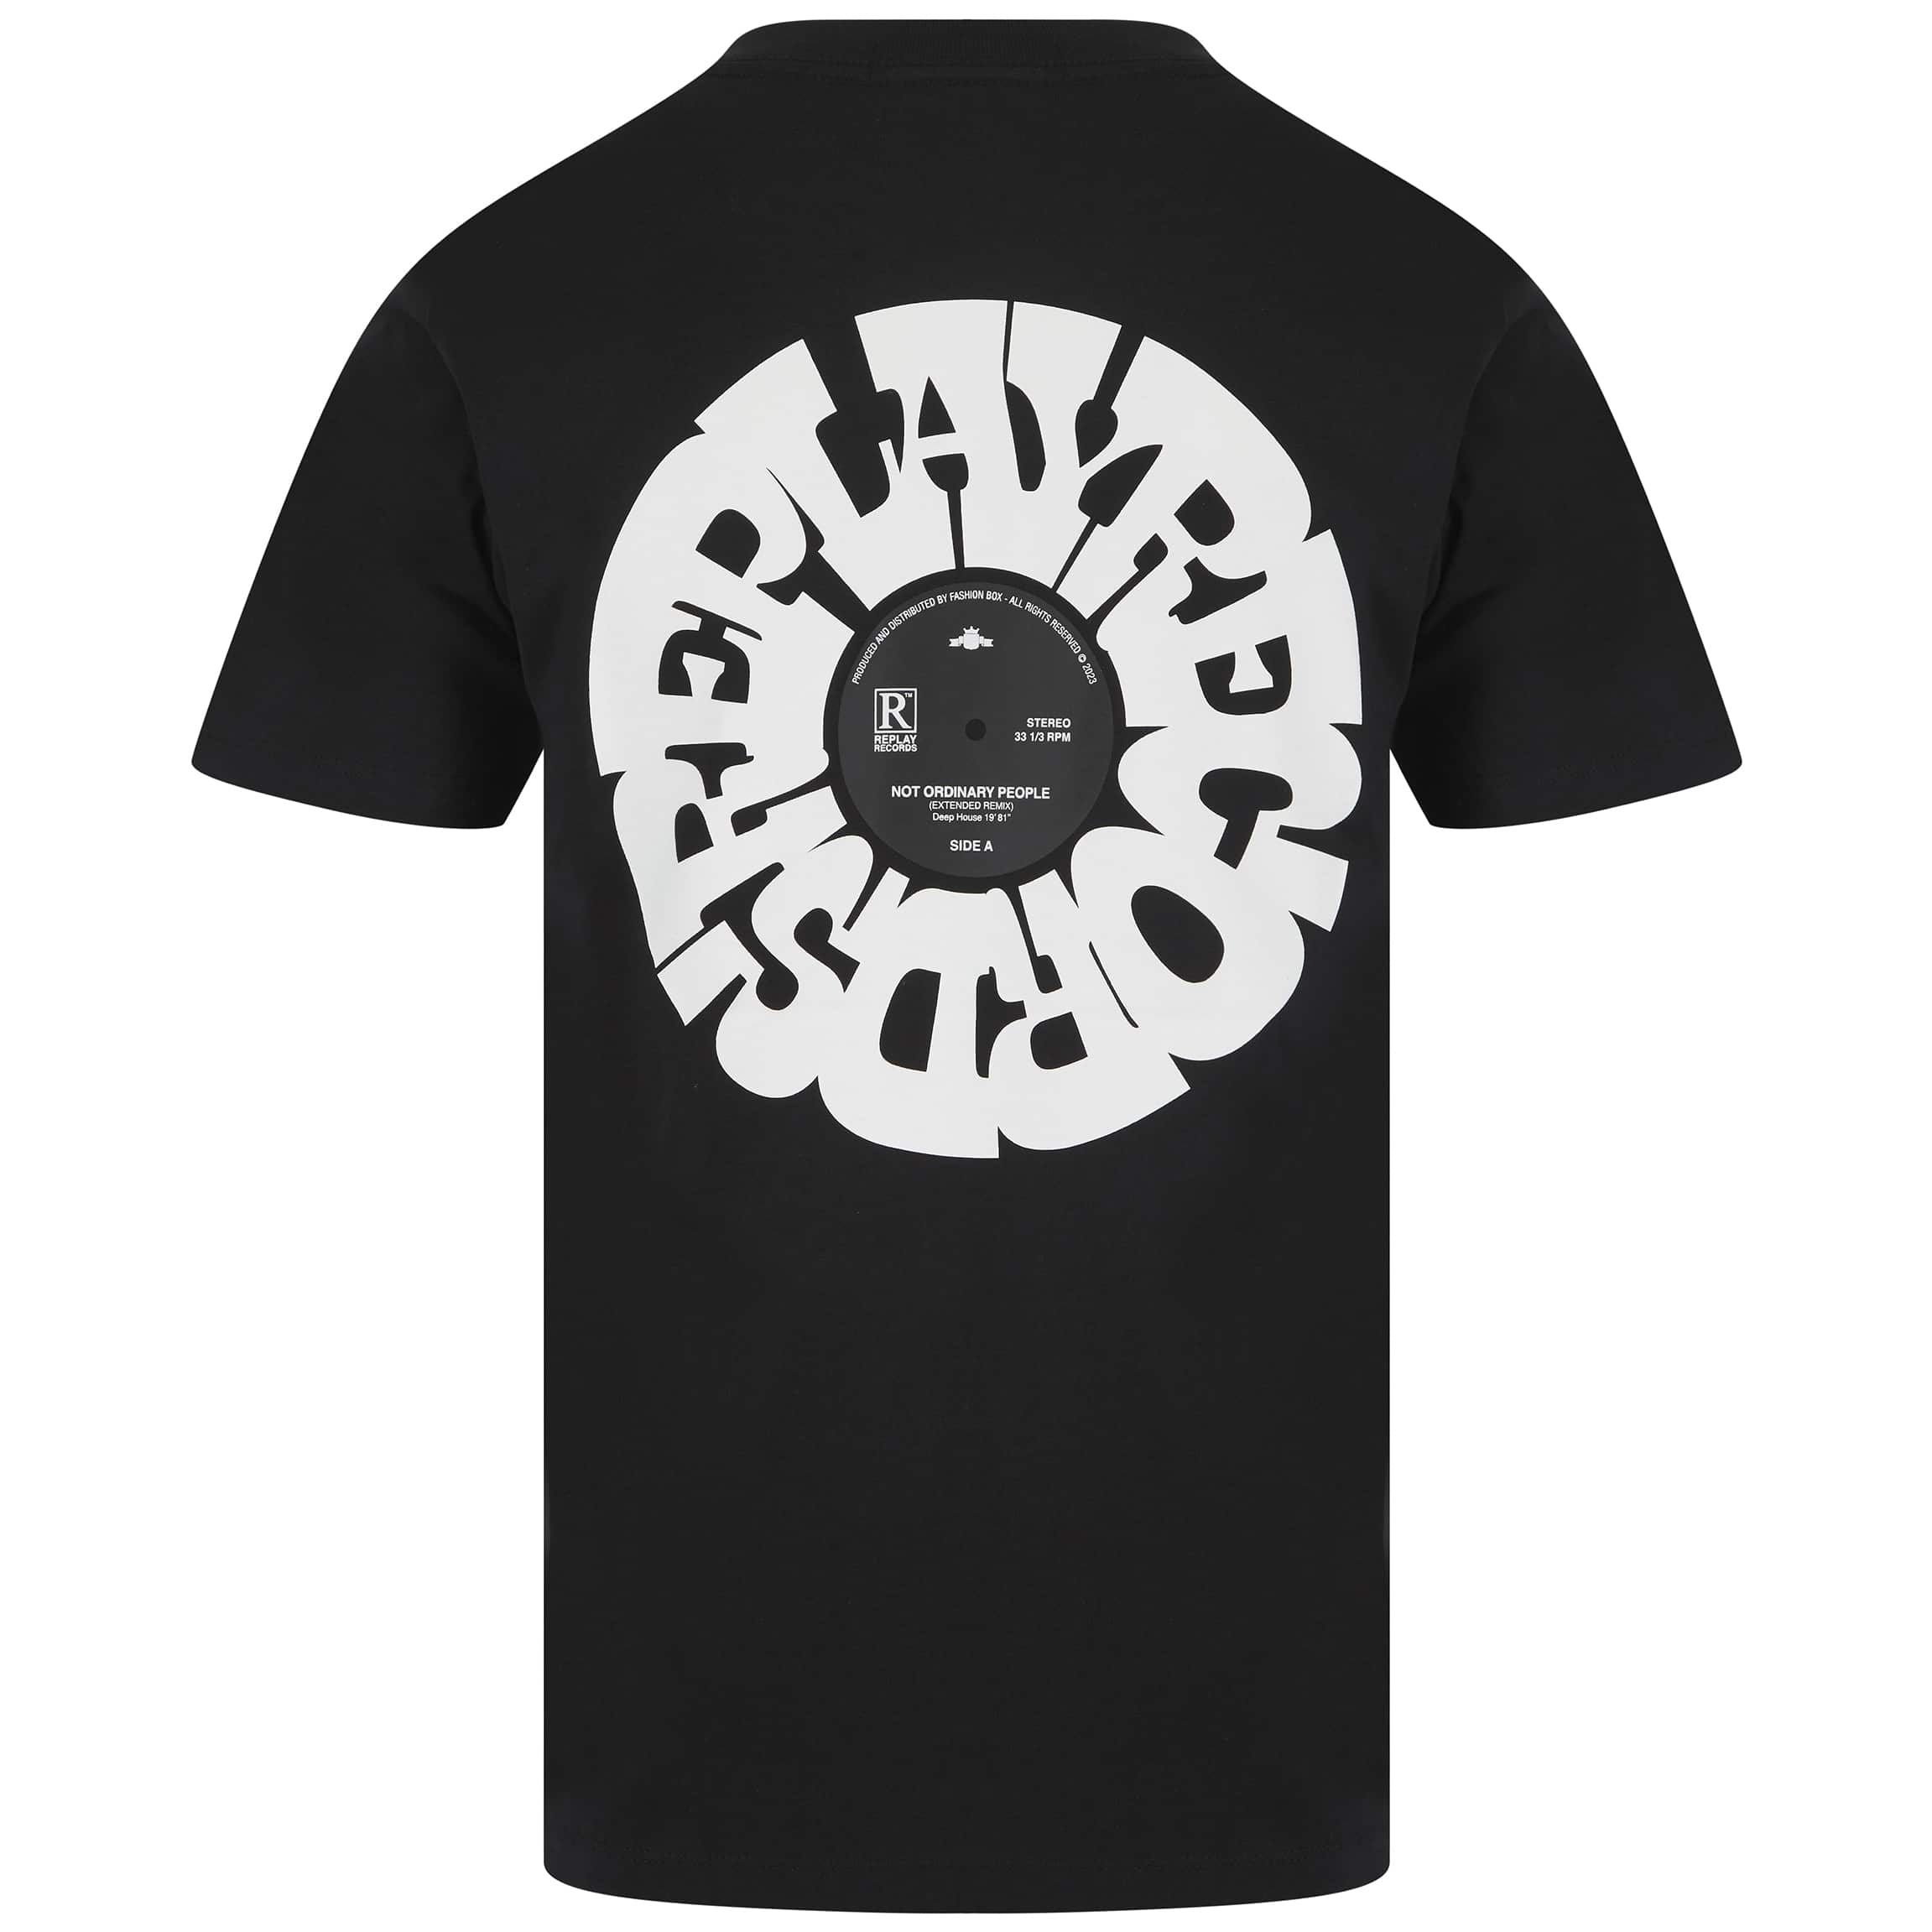 Replay Records Print T-Shirt MISTR –